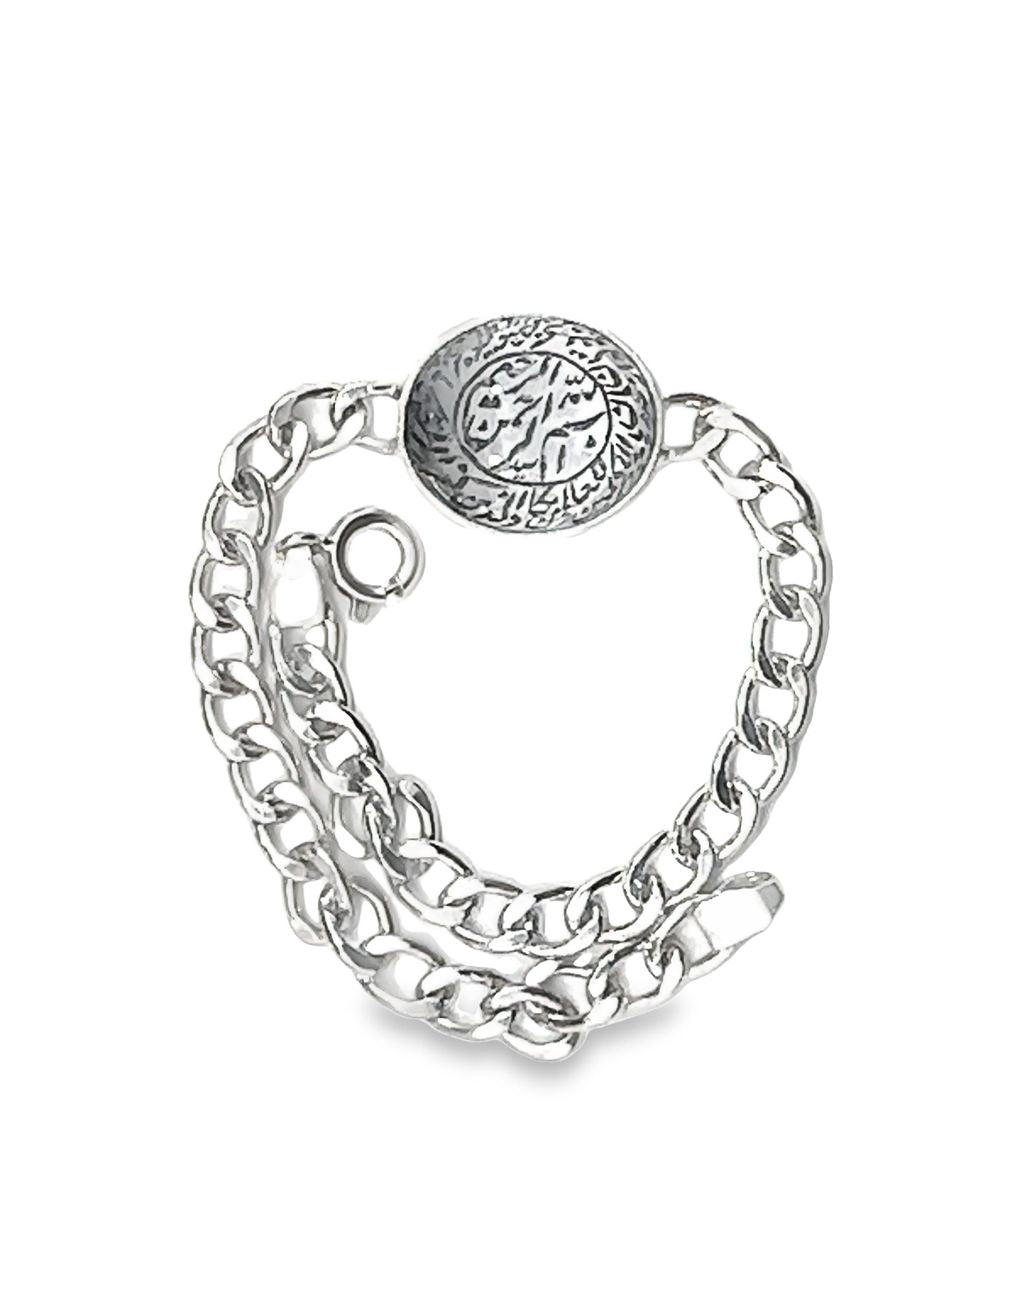 Dur Najaf Sterling Silver Engraved Bracelet